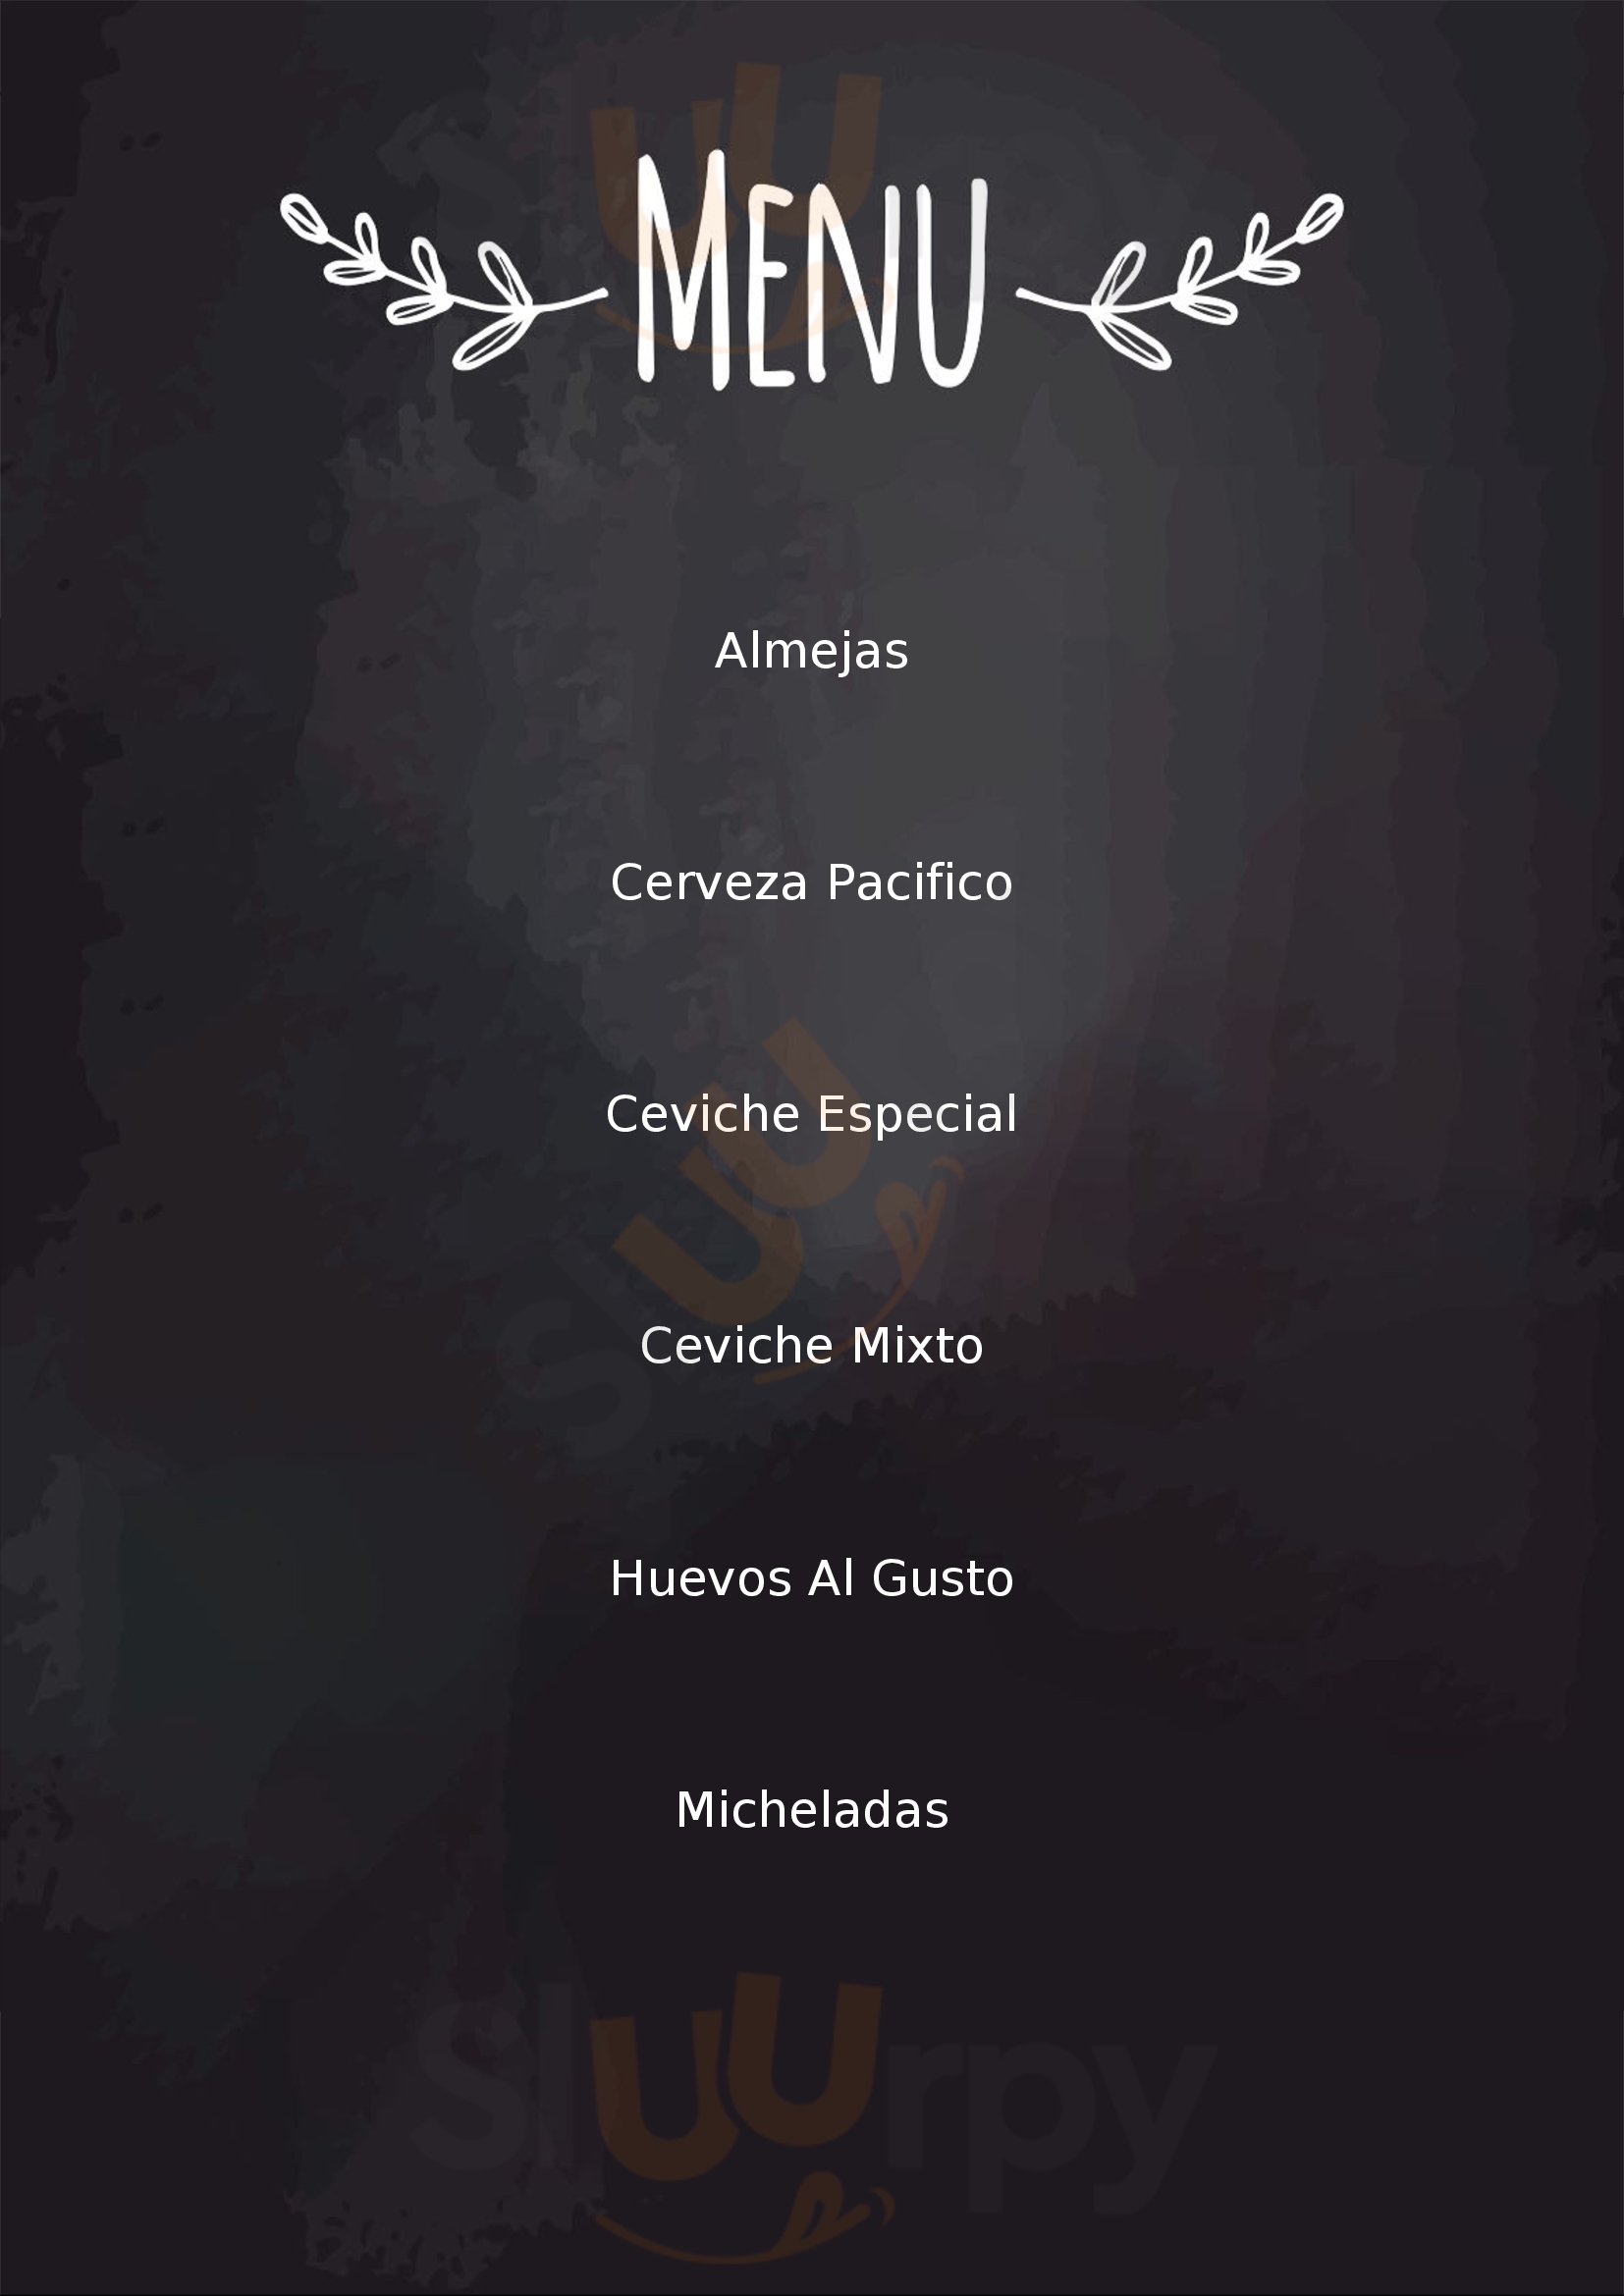 Carmelita's Hotel Restaurante Mazatlán Menu - 1